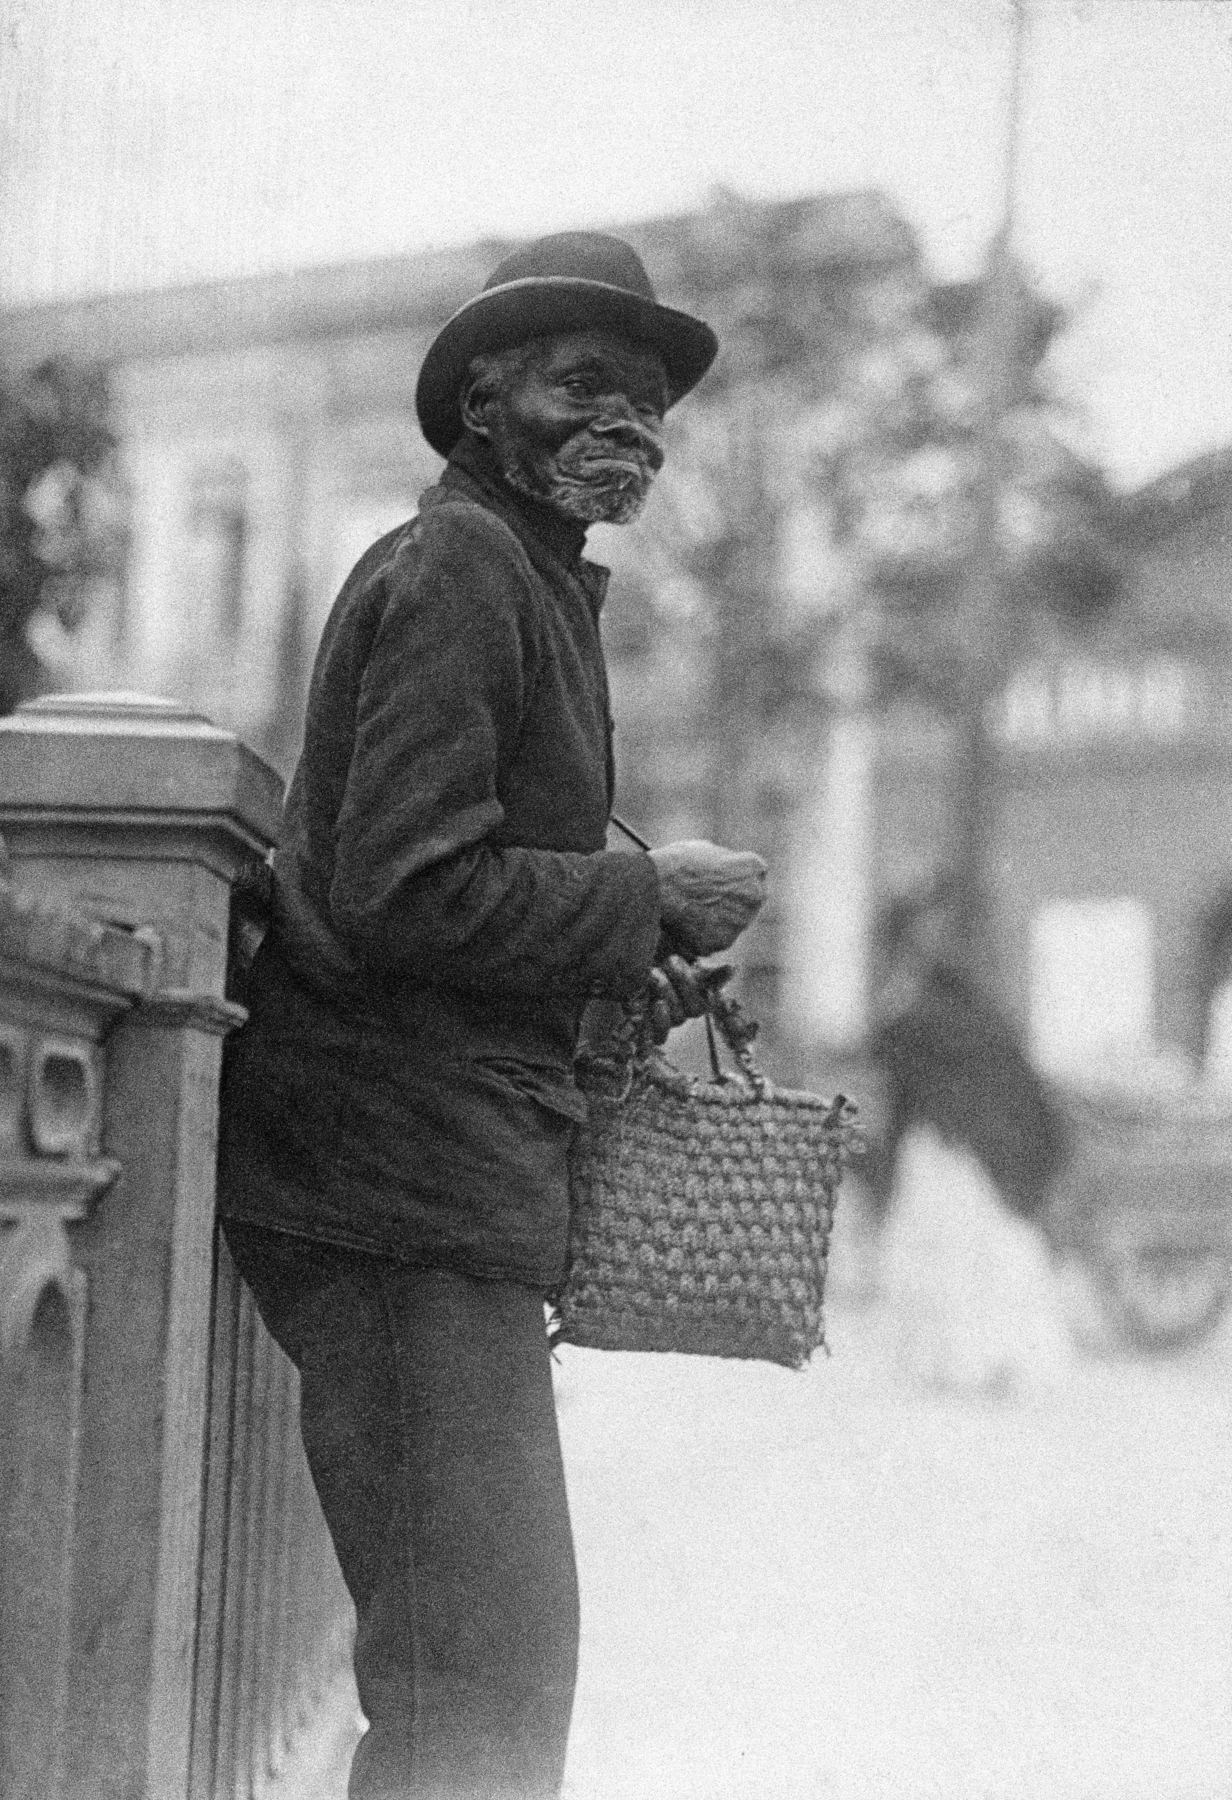 Fotografia em preto e branco. Destaque para um homem negro, idoso, em pé, visto de lado, vestindo uma blusa, uma calça e um chapéu com abas sobre sua cabeça. Segura uma pequena bolsa em uma de suas mãos.